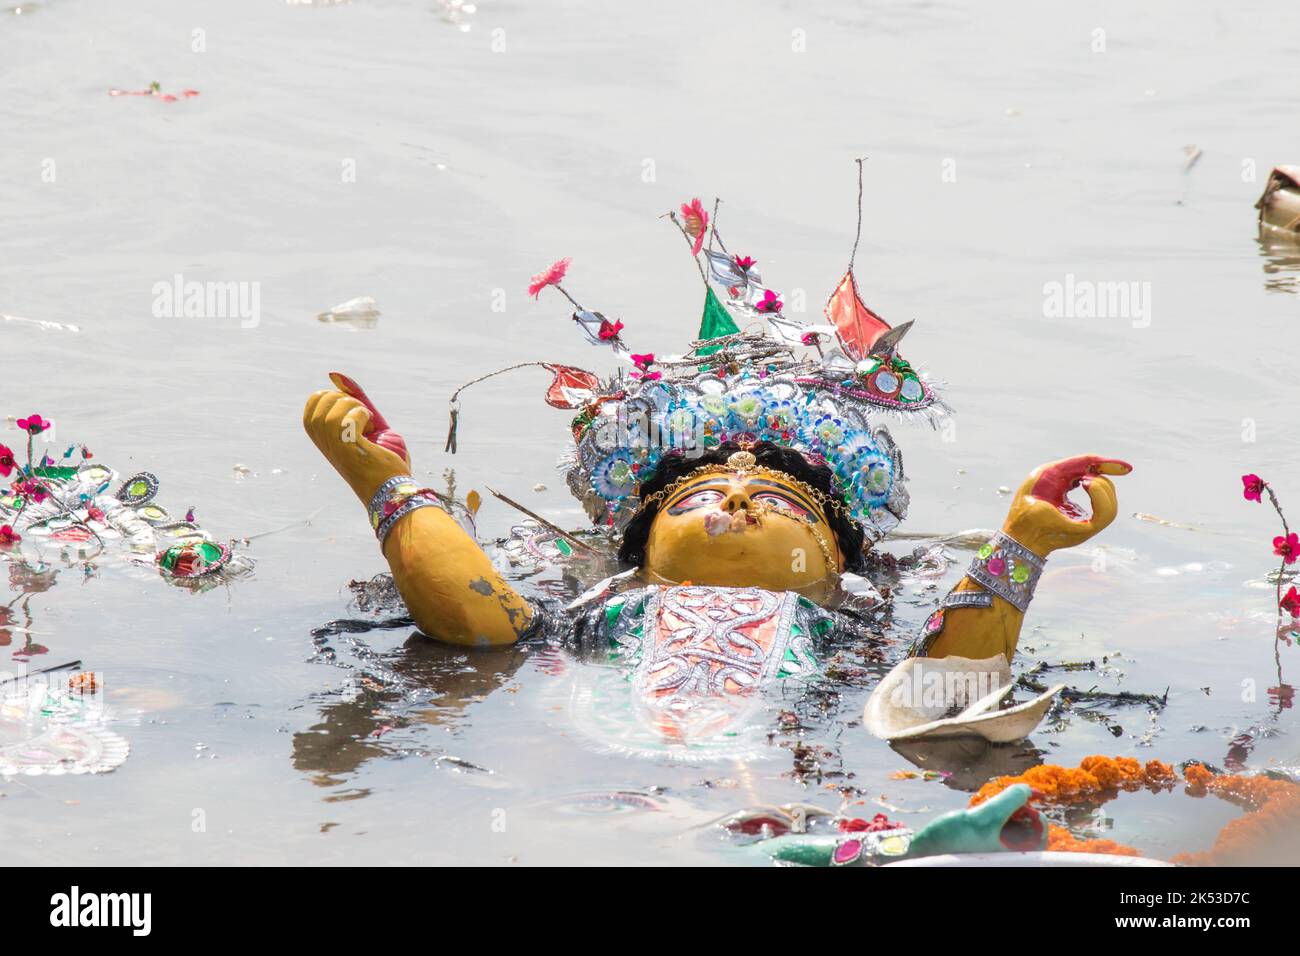 Idol der Göttin Durga wird am heiligen Fluss Ganges, am Ende des Durga Puja Festivals eingetaucht. Die Veranstaltung wird in bengalischer Sprache Bisorjon genannt. Stockfoto